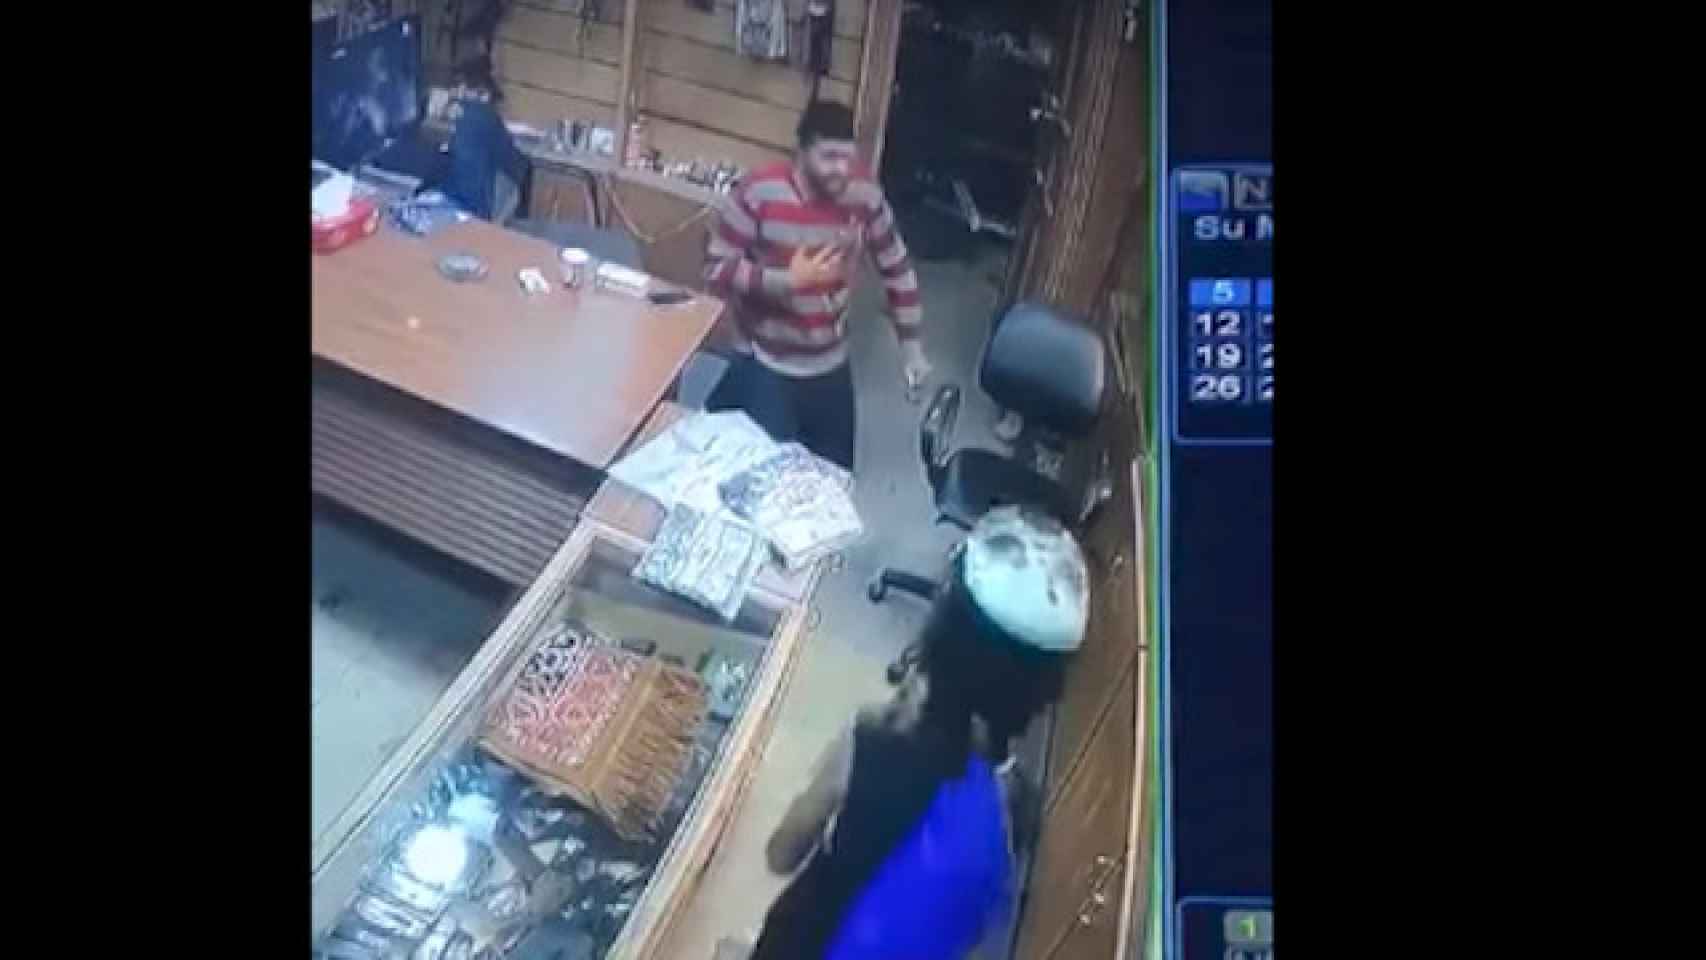 El niño disparó al vendedor en la tienda / Youtube